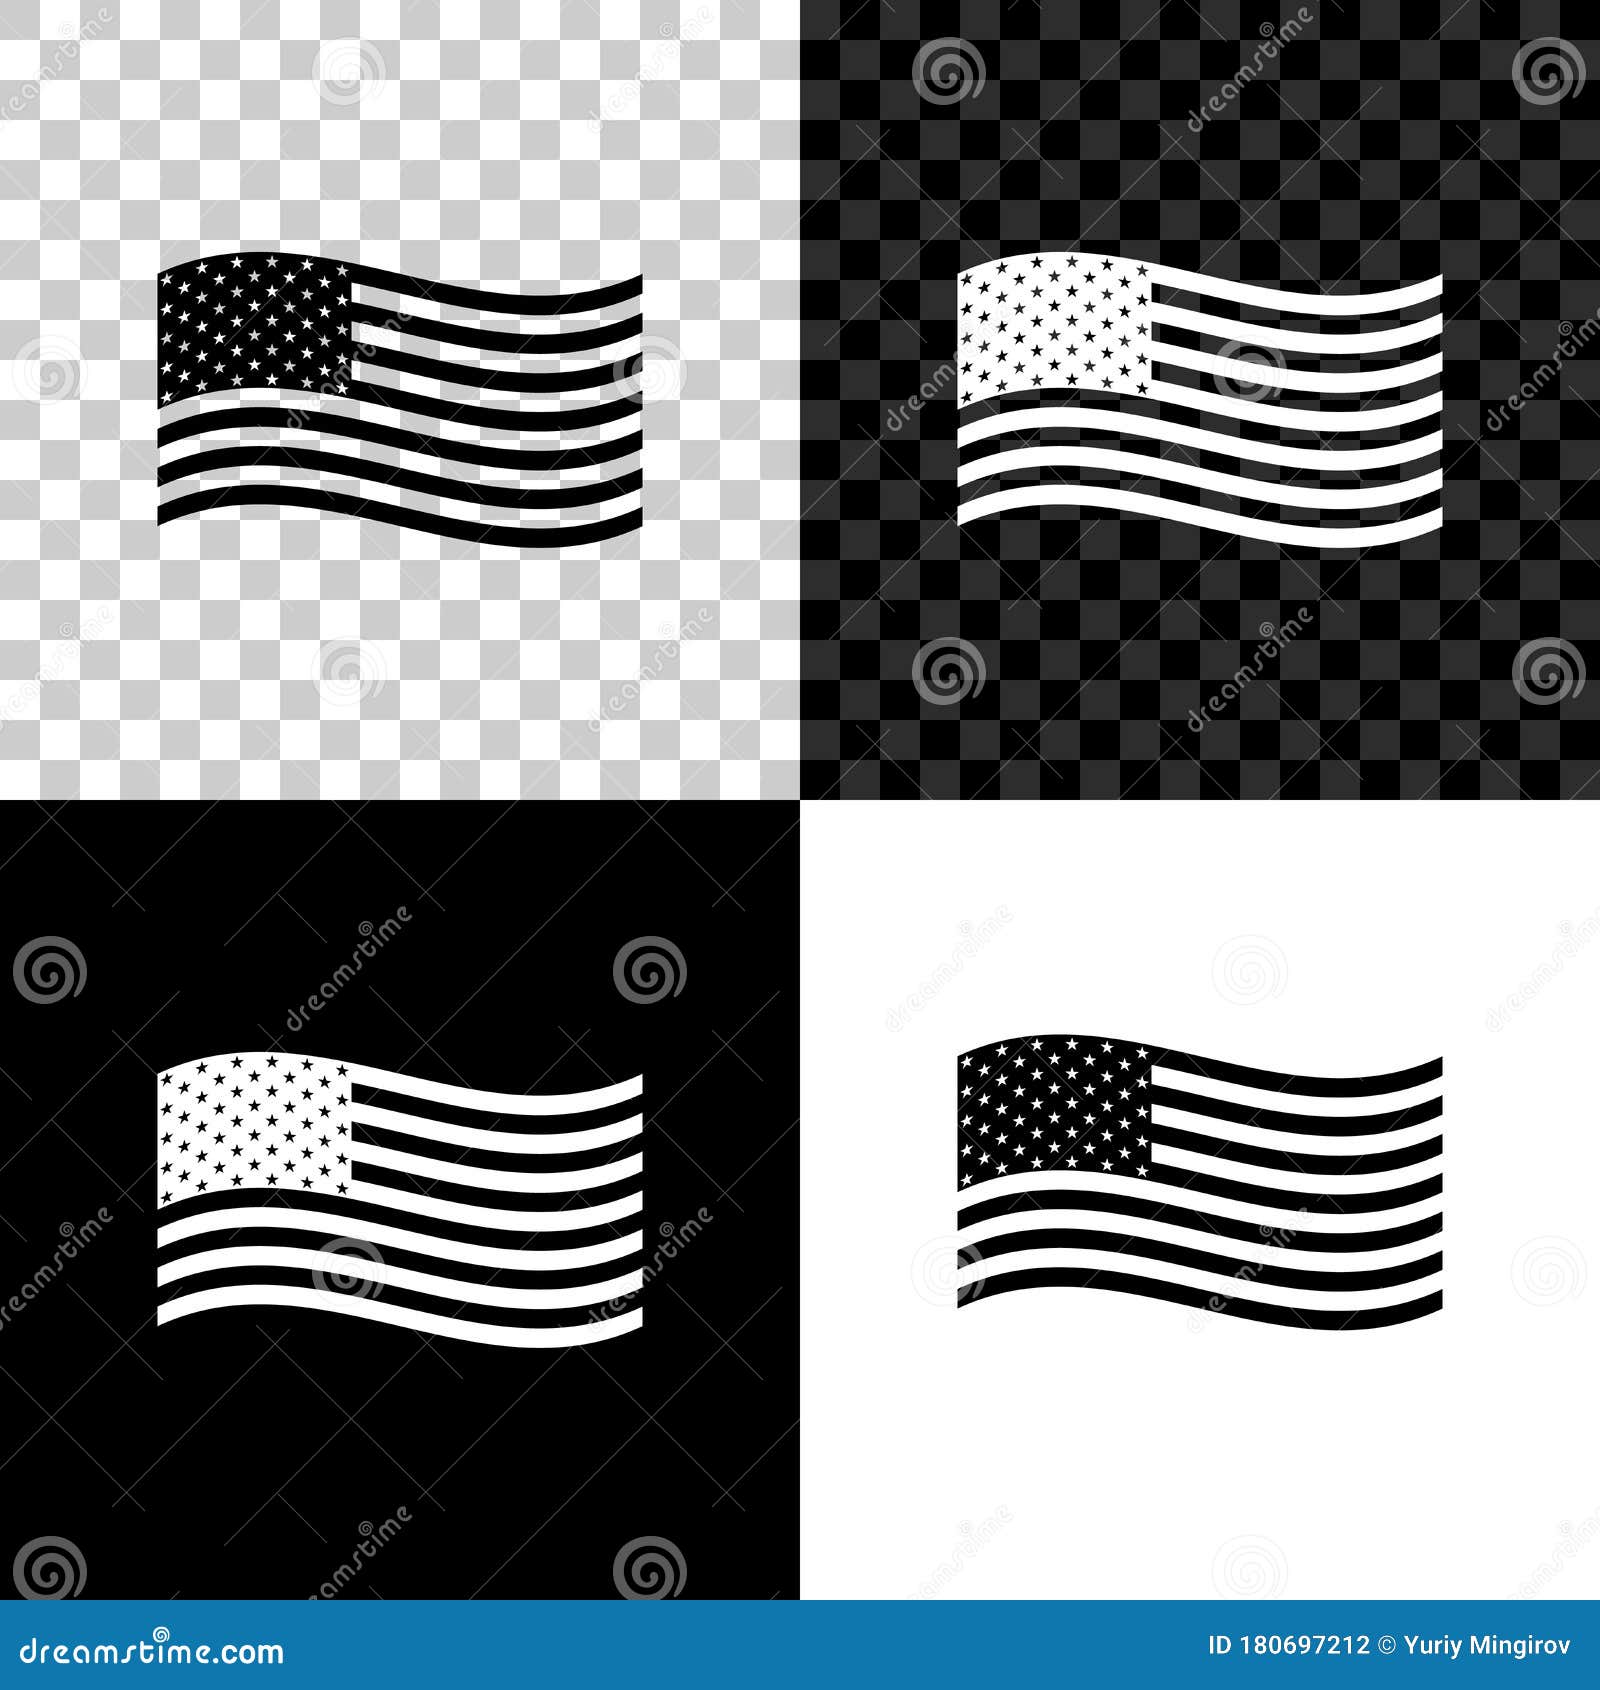 All 97+ Images bandera de estados unidos negra y blanca Updated